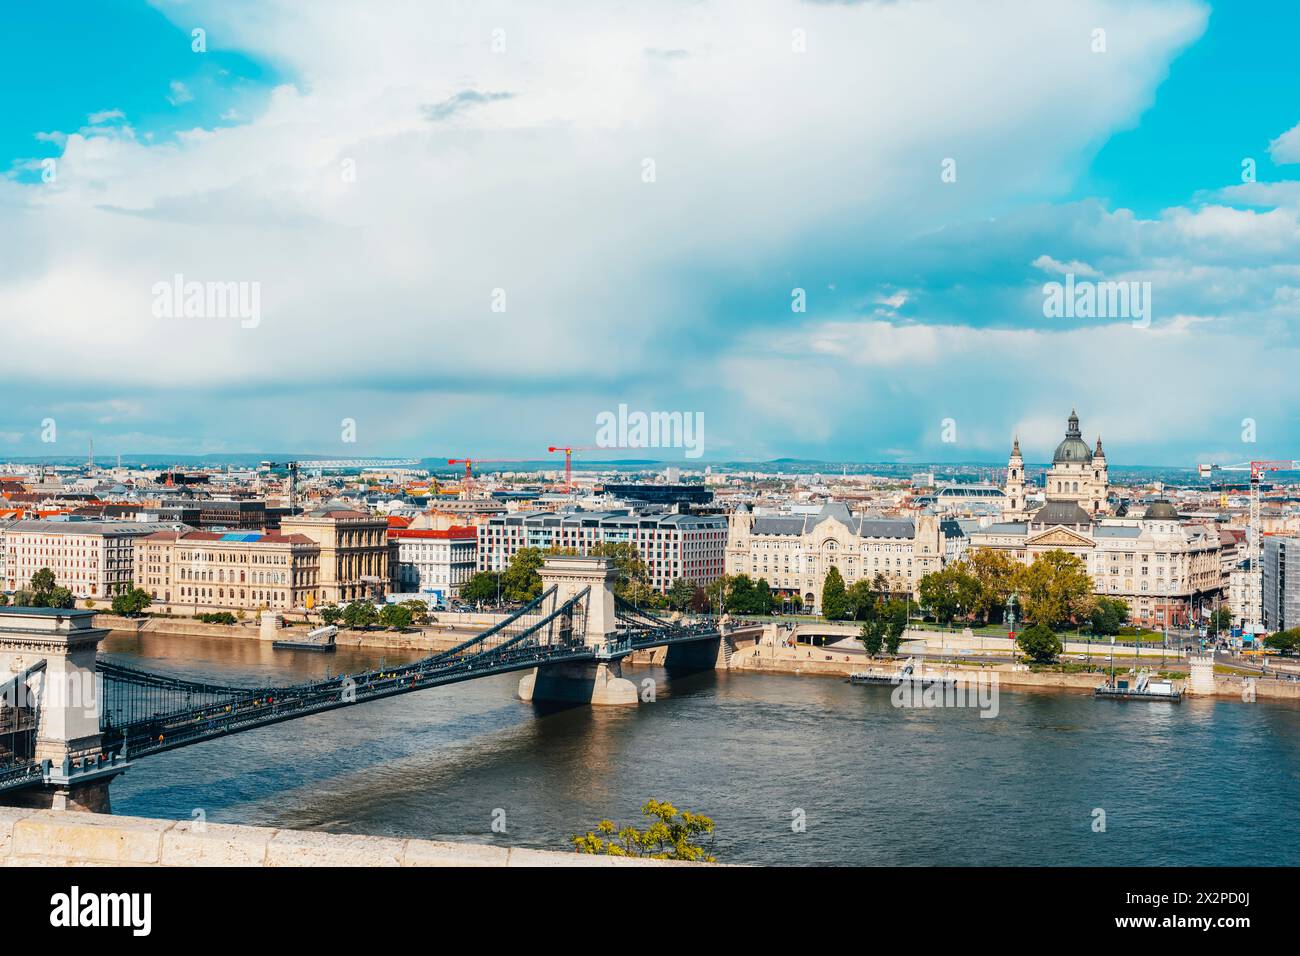 Le Danube et le pont des chaînes Szechenyi, vue depuis le château de Buda. Budapest, Hongrie. Banque D'Images